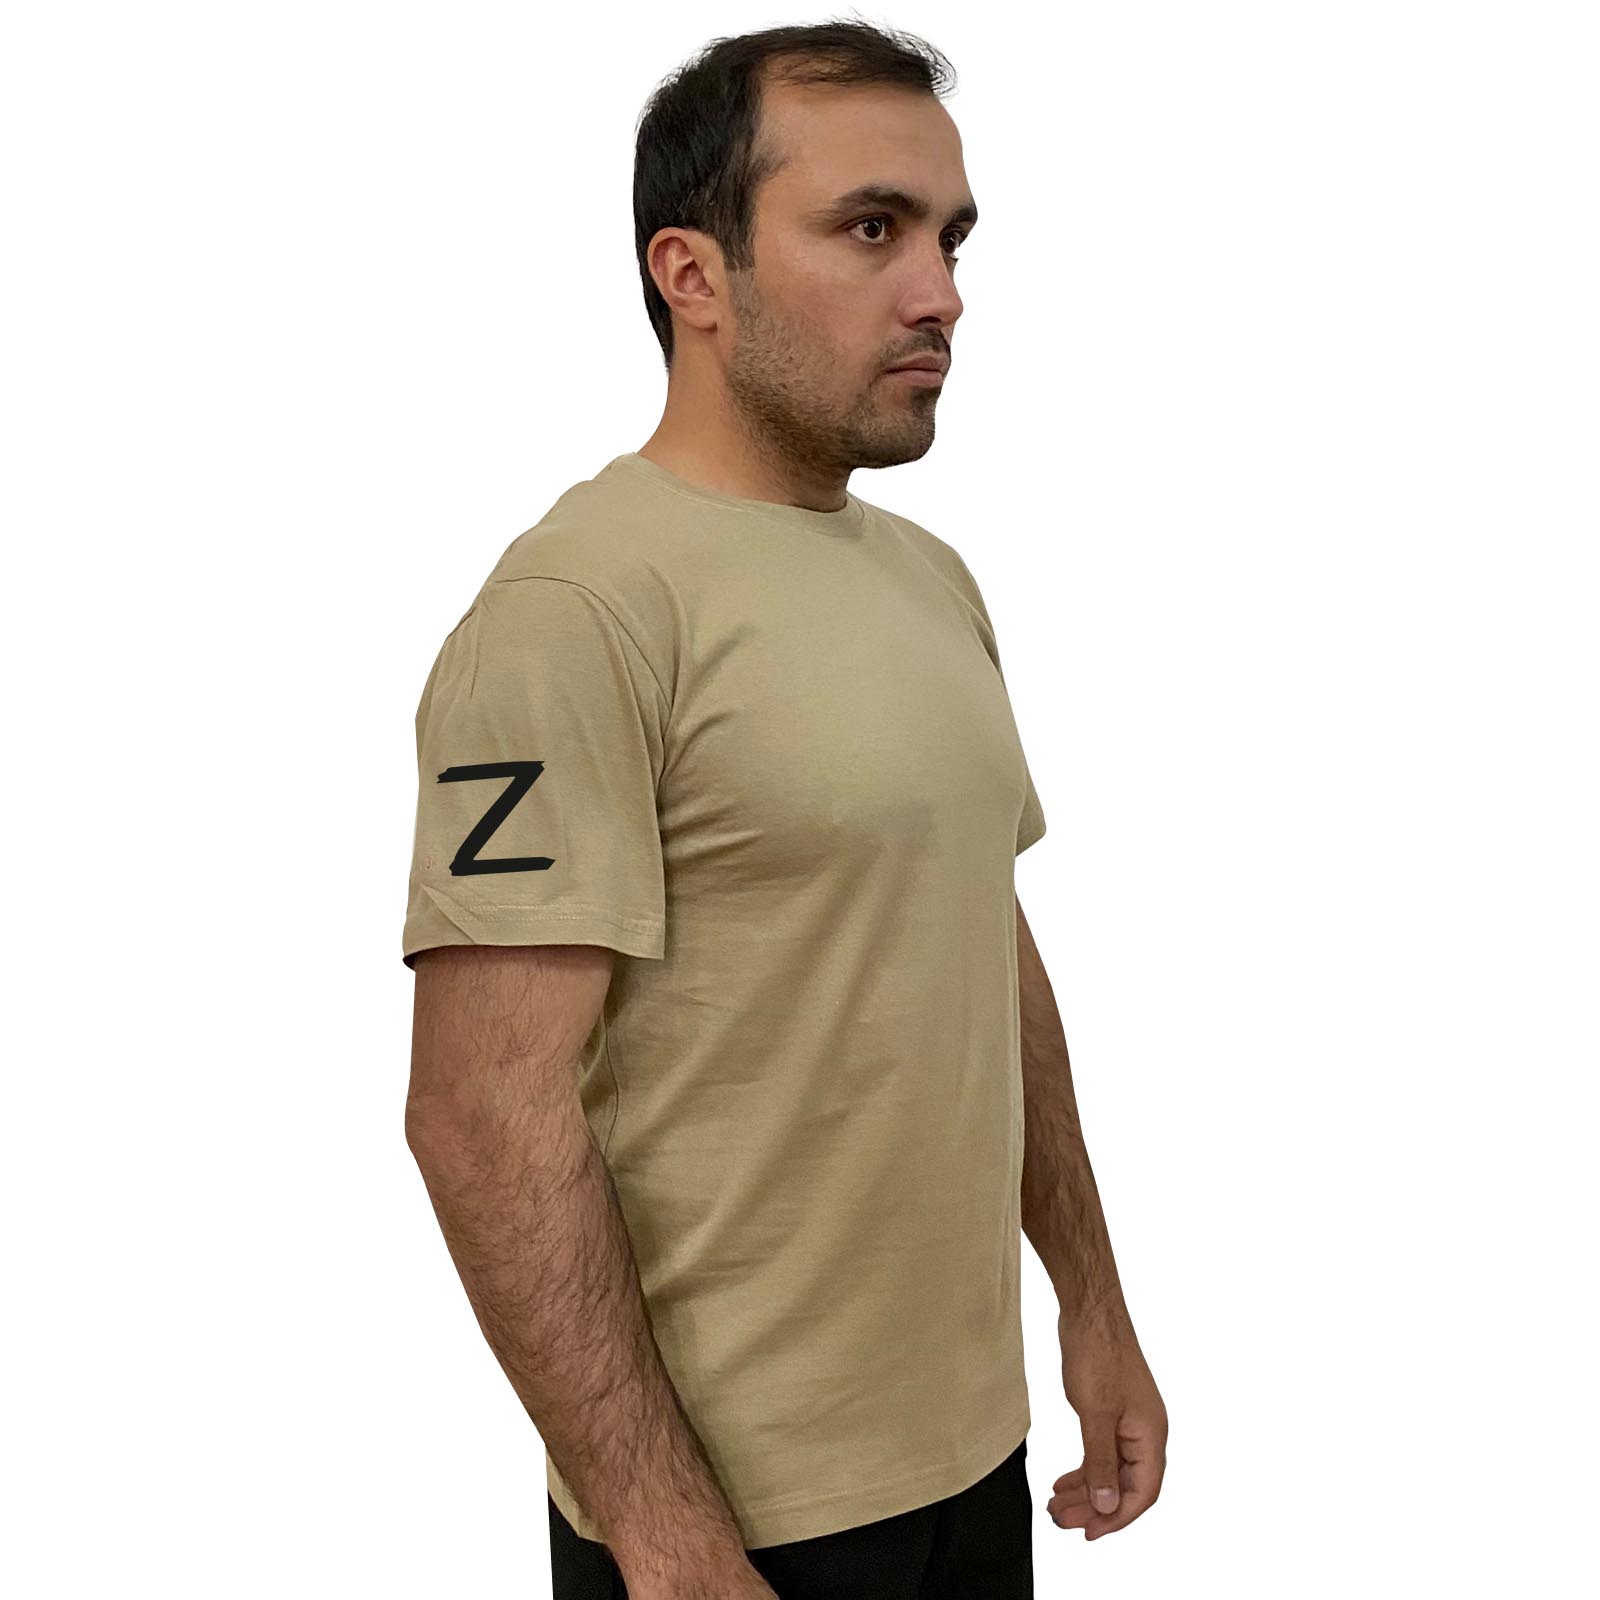 Купить строгую песочную футболку с литерой Z онлайн